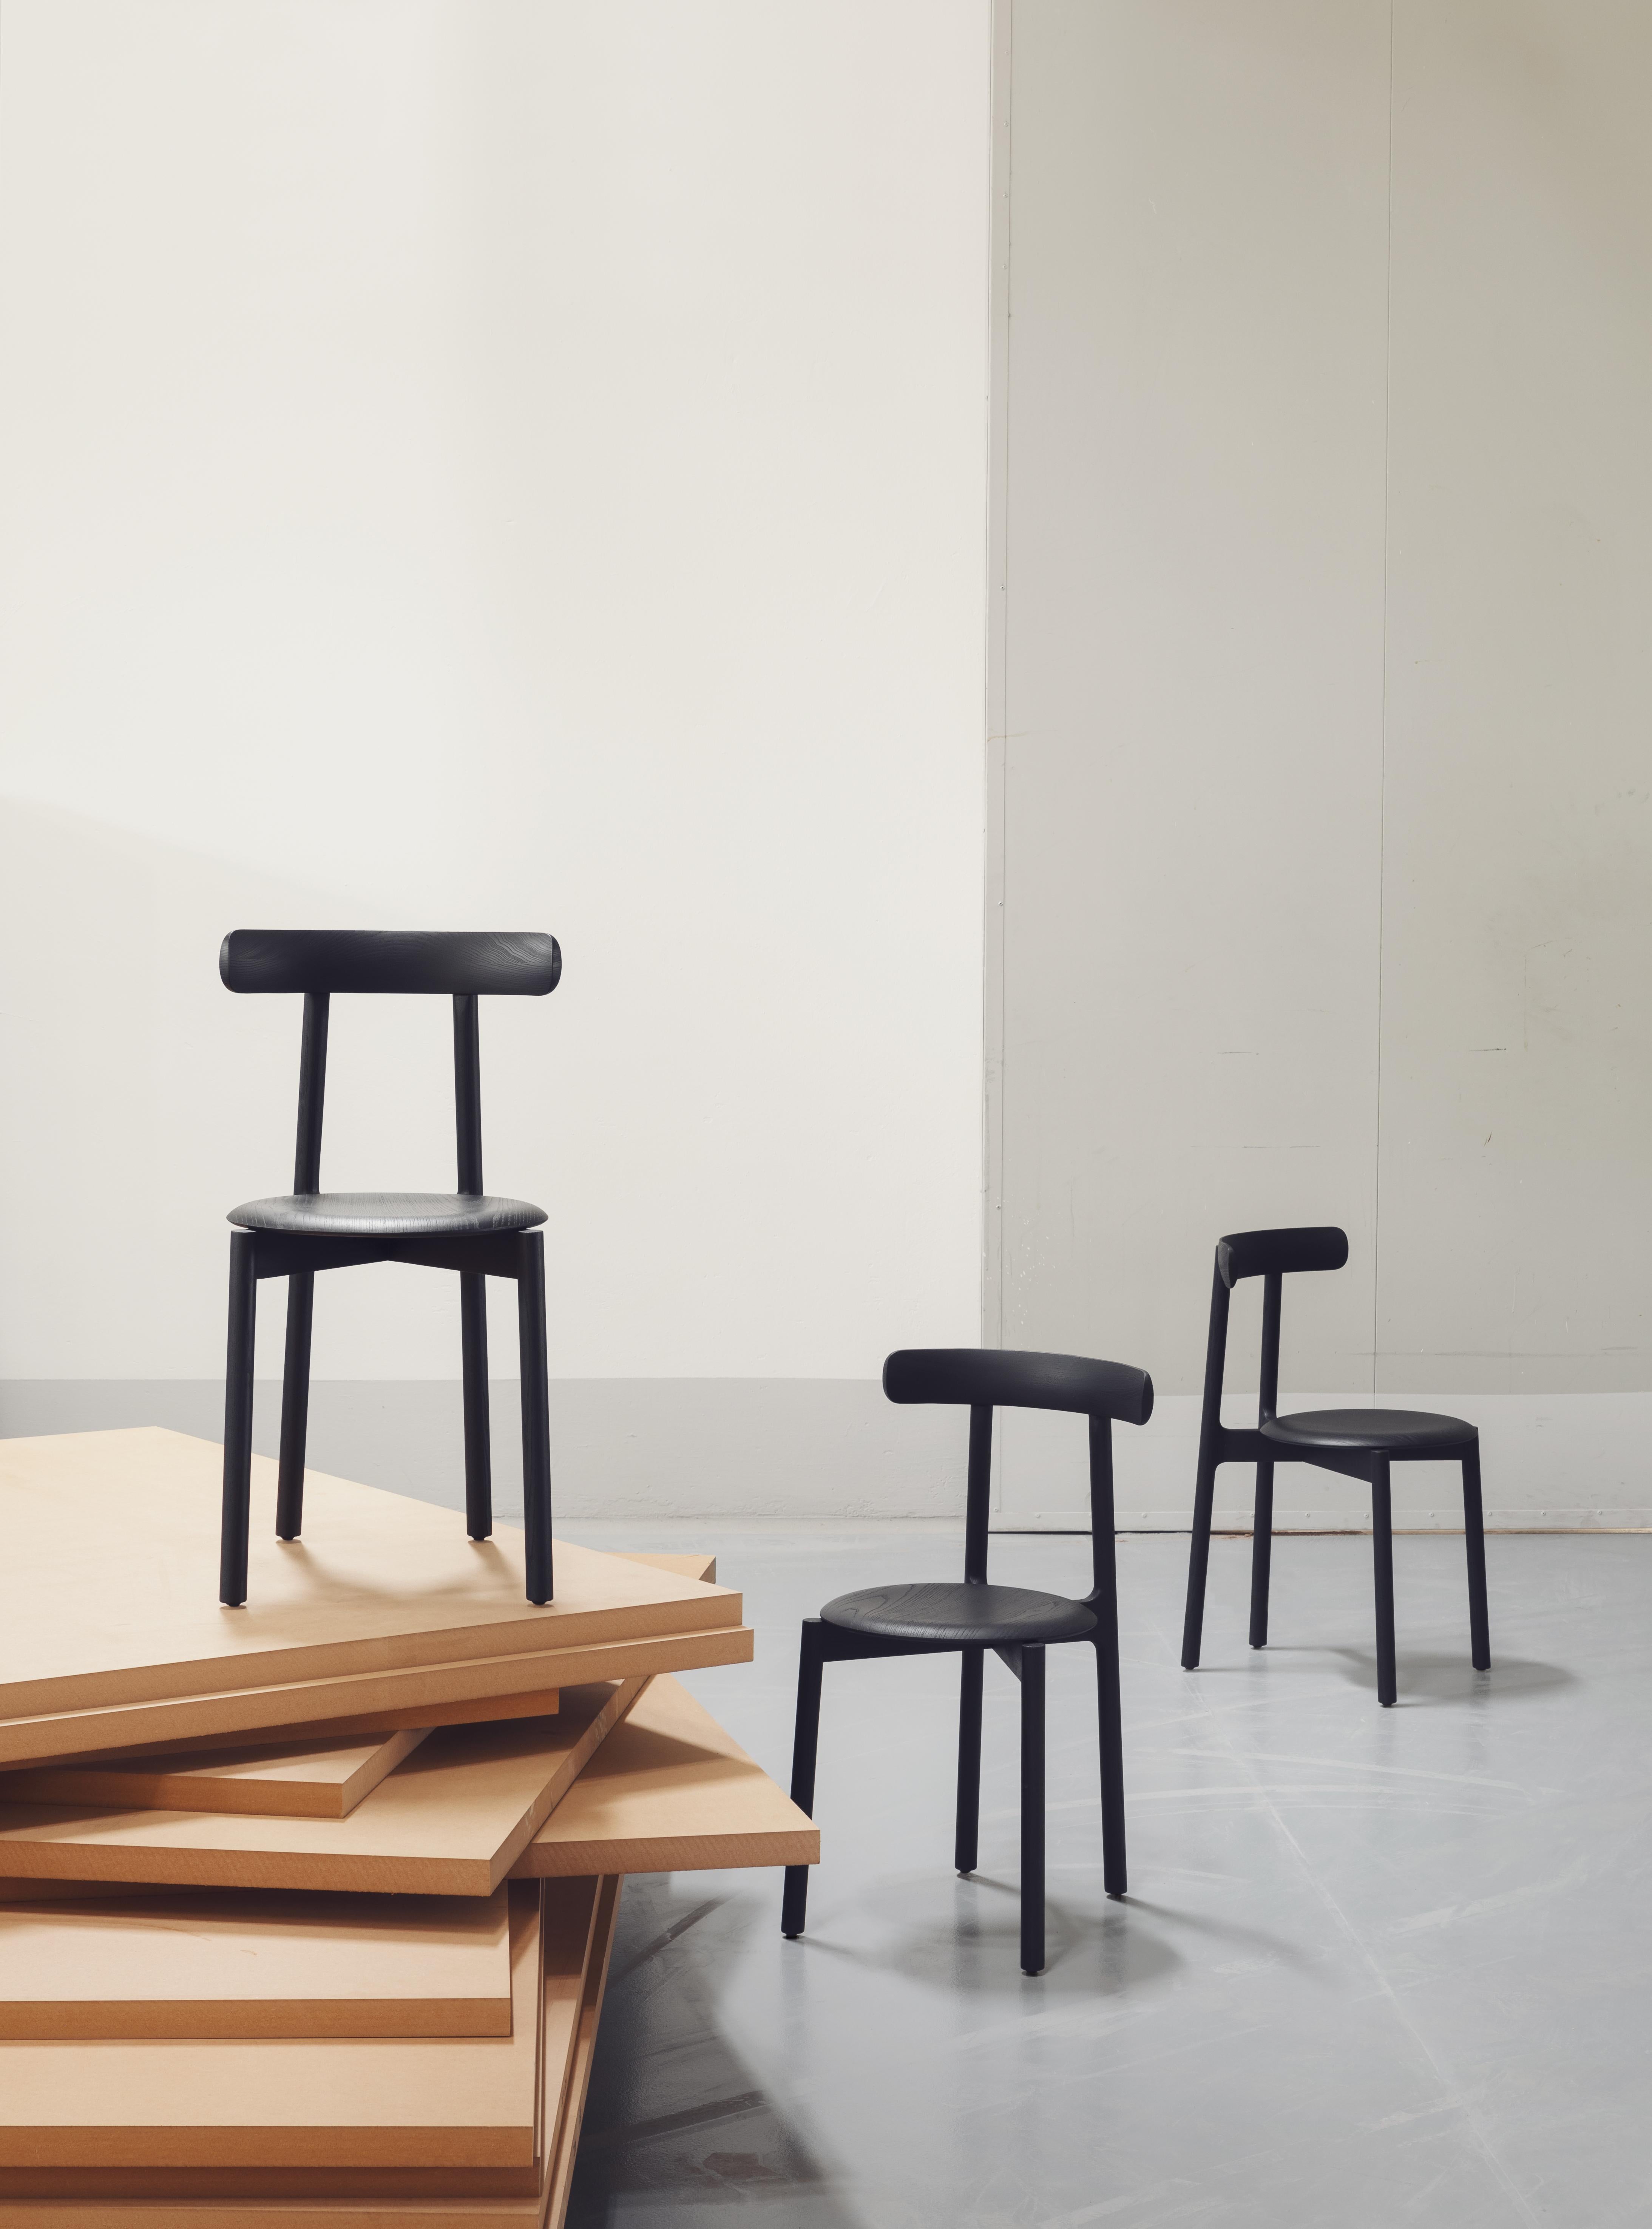 Bice ist ein schlanker und manchmal ungewöhnlicher Stuhl. Sein essentielles Design wird durch die Rückenlehne mit Klappohren kontrastiert, die seine Struktur ausgleicht und prägt.

Miniforms ist ein Möbeldesigner mit Sitz in Venedig.
Oder besser